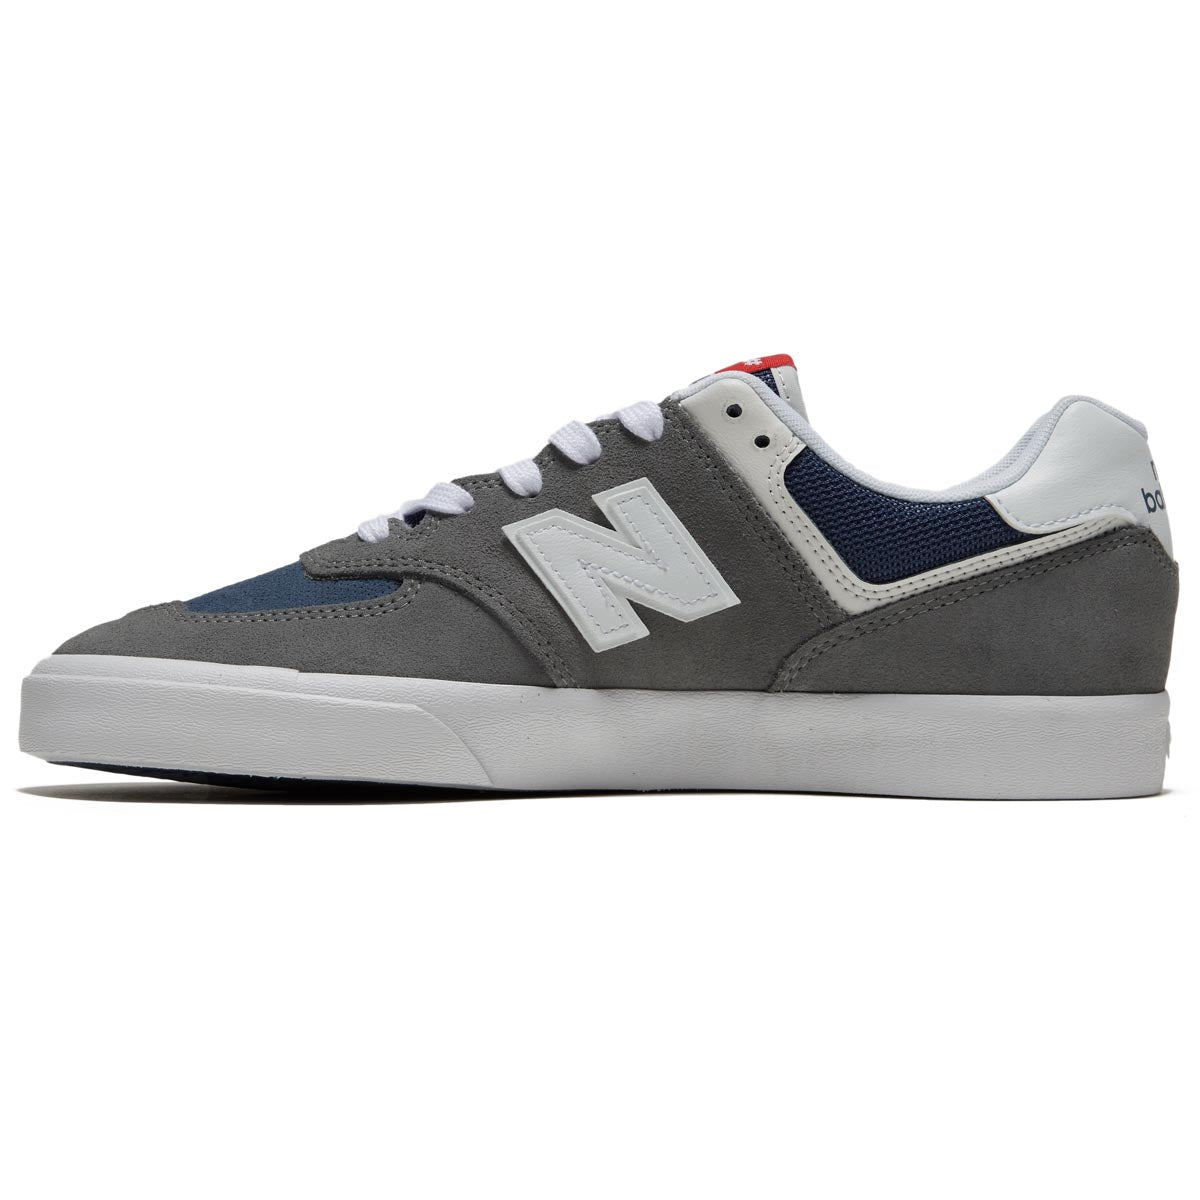 New Balance 574 Vulc Shoes - Grey/White image 2